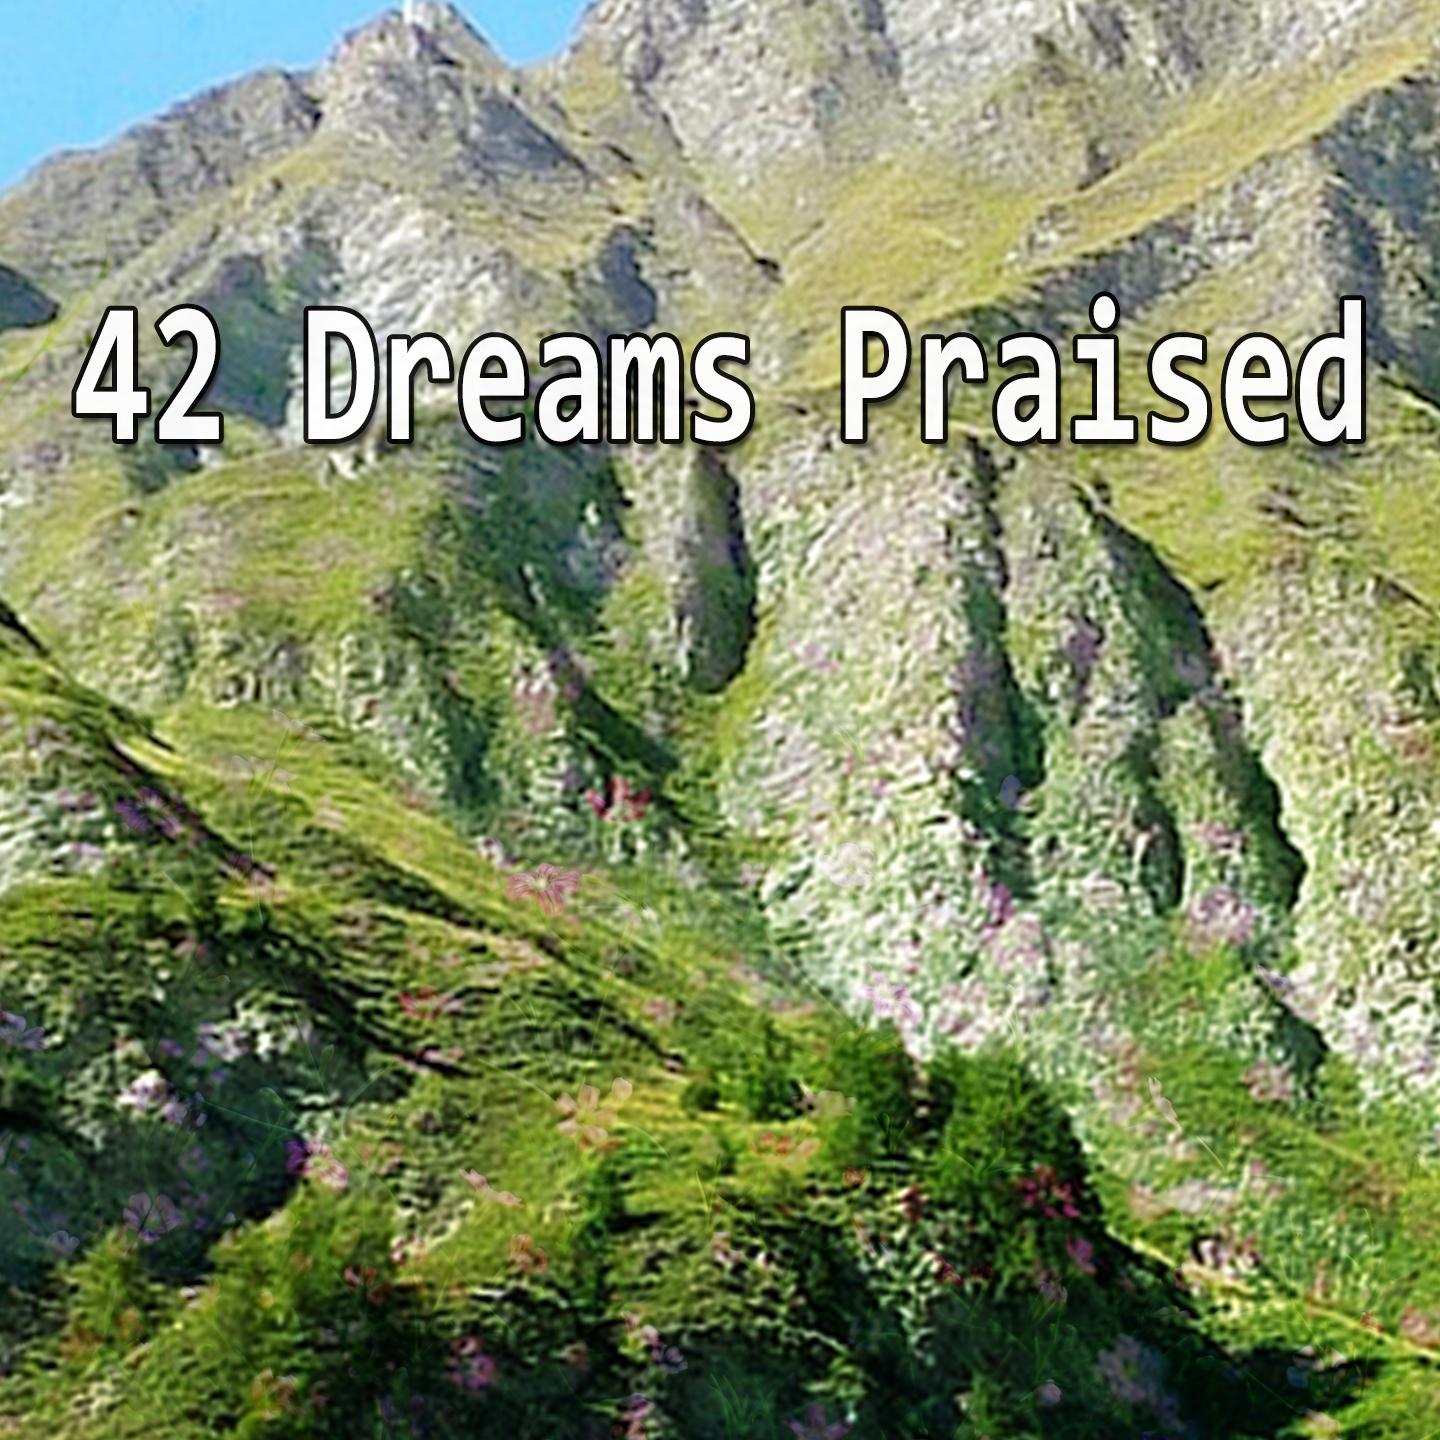 42 Dreams Praised